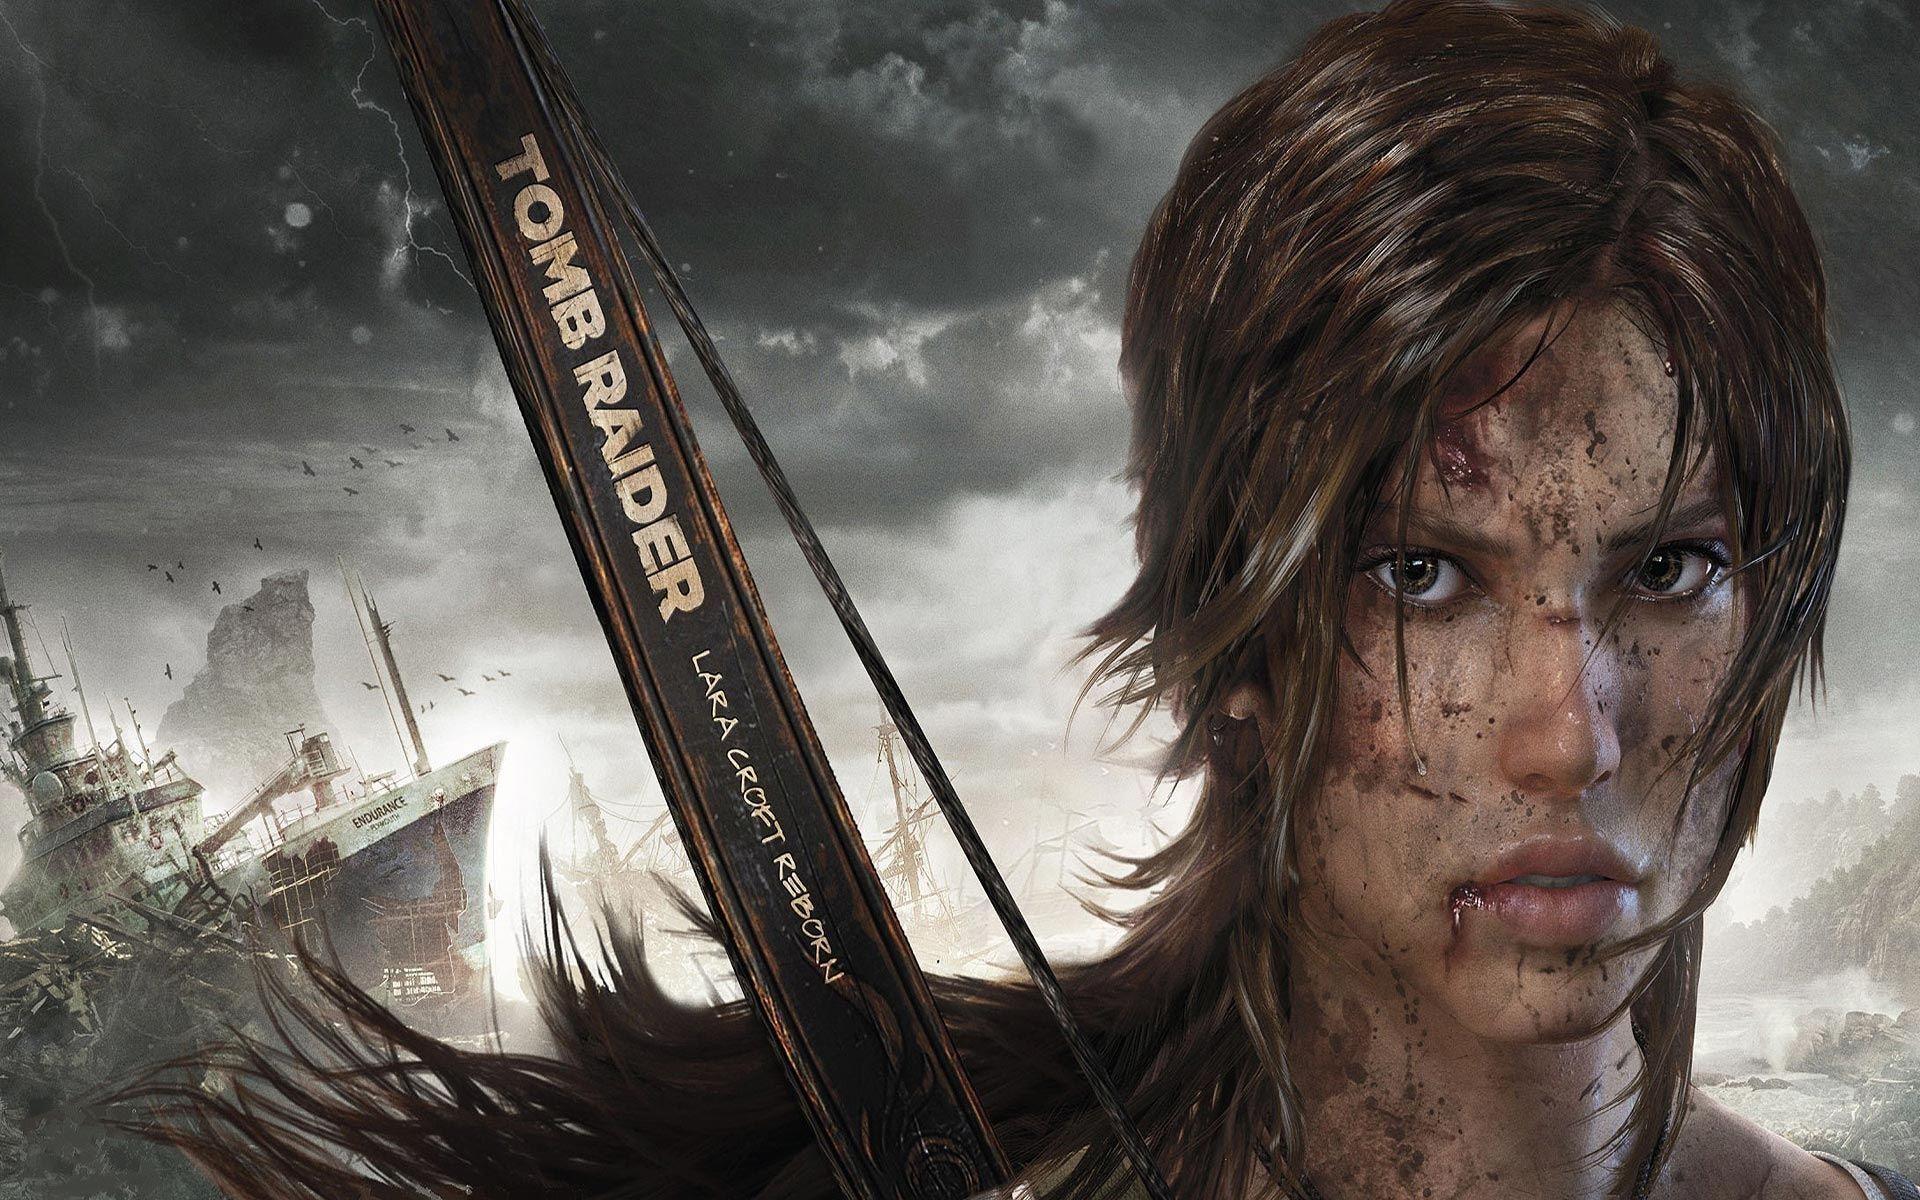 Tomb Raider&;s writer Rhianna Pratchett discusses the future